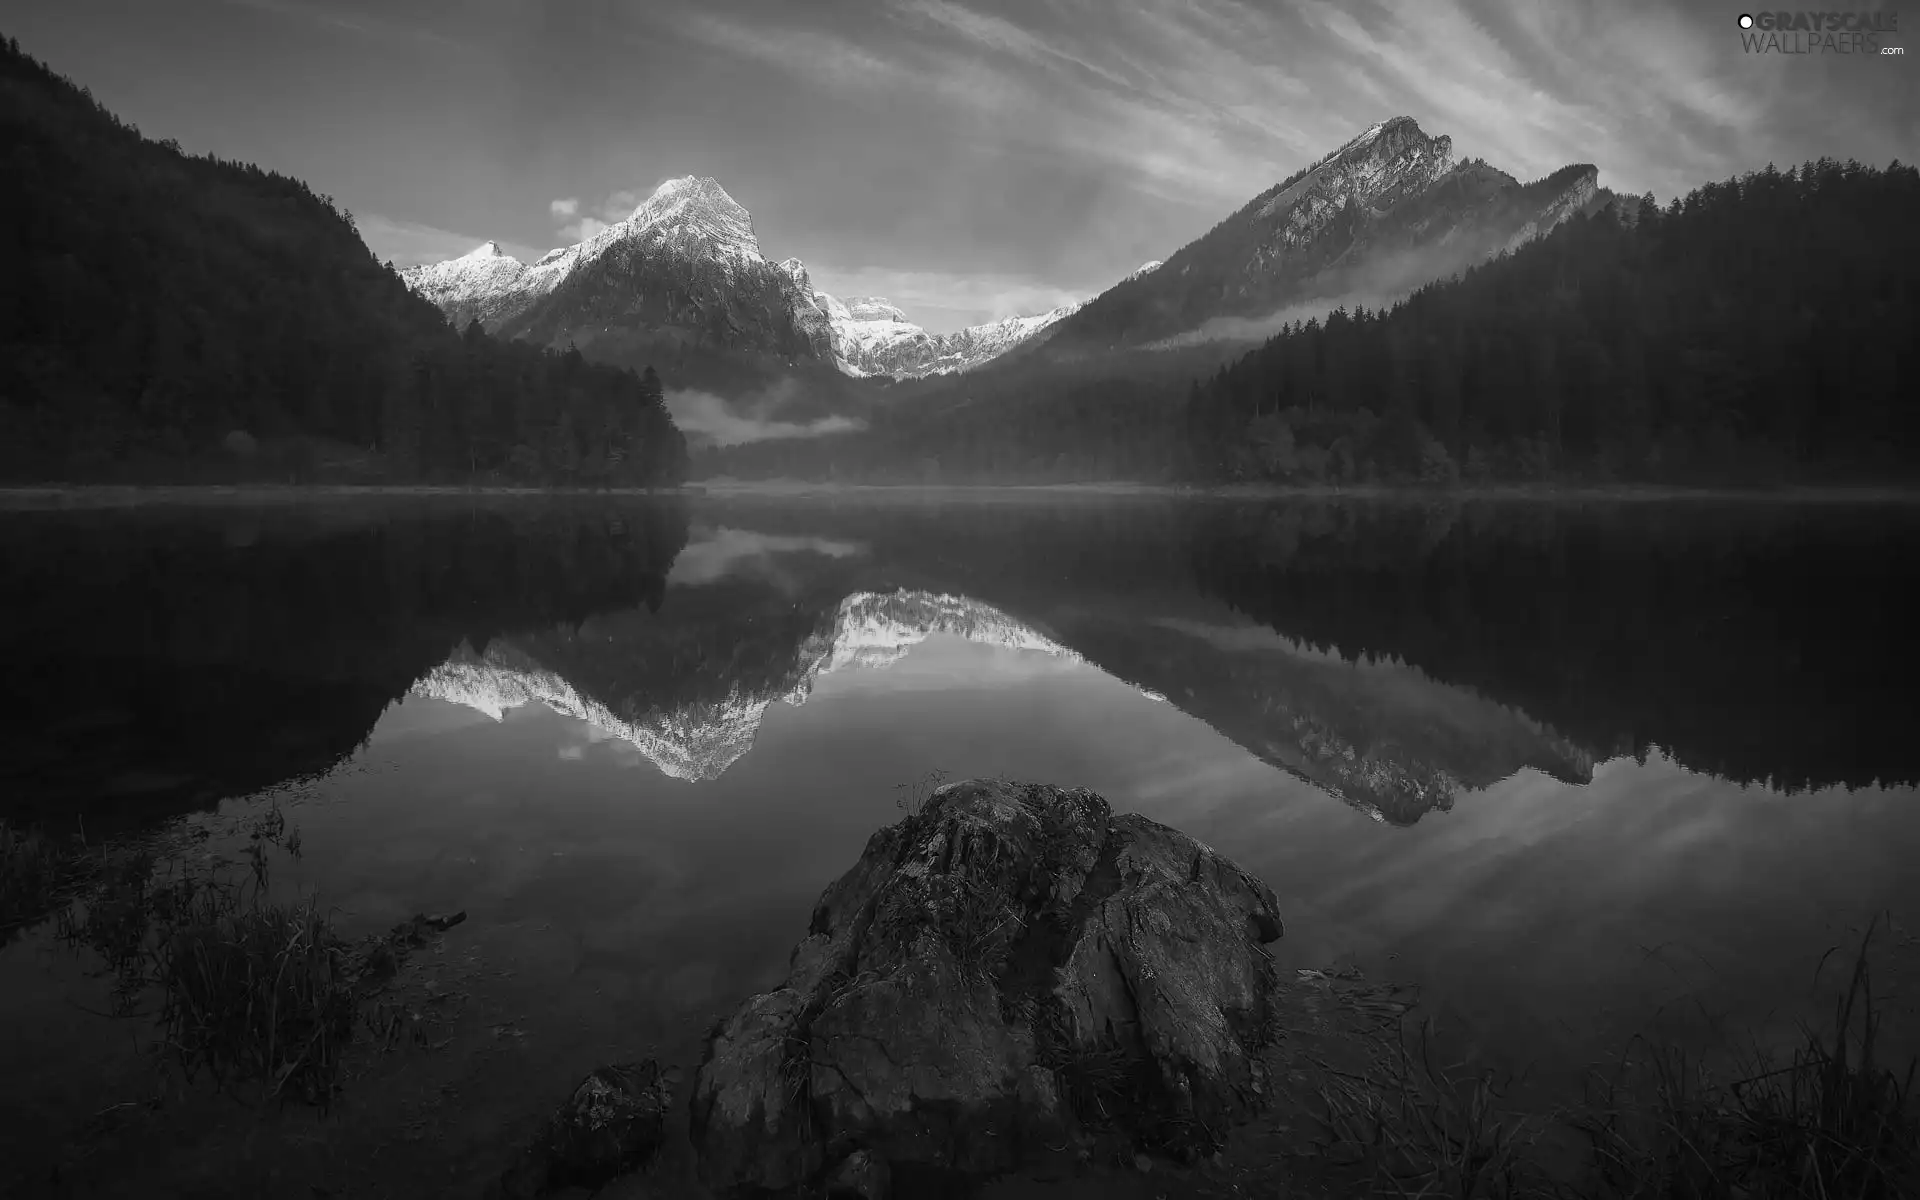 Fog, reflection, lake, woods, Mountains